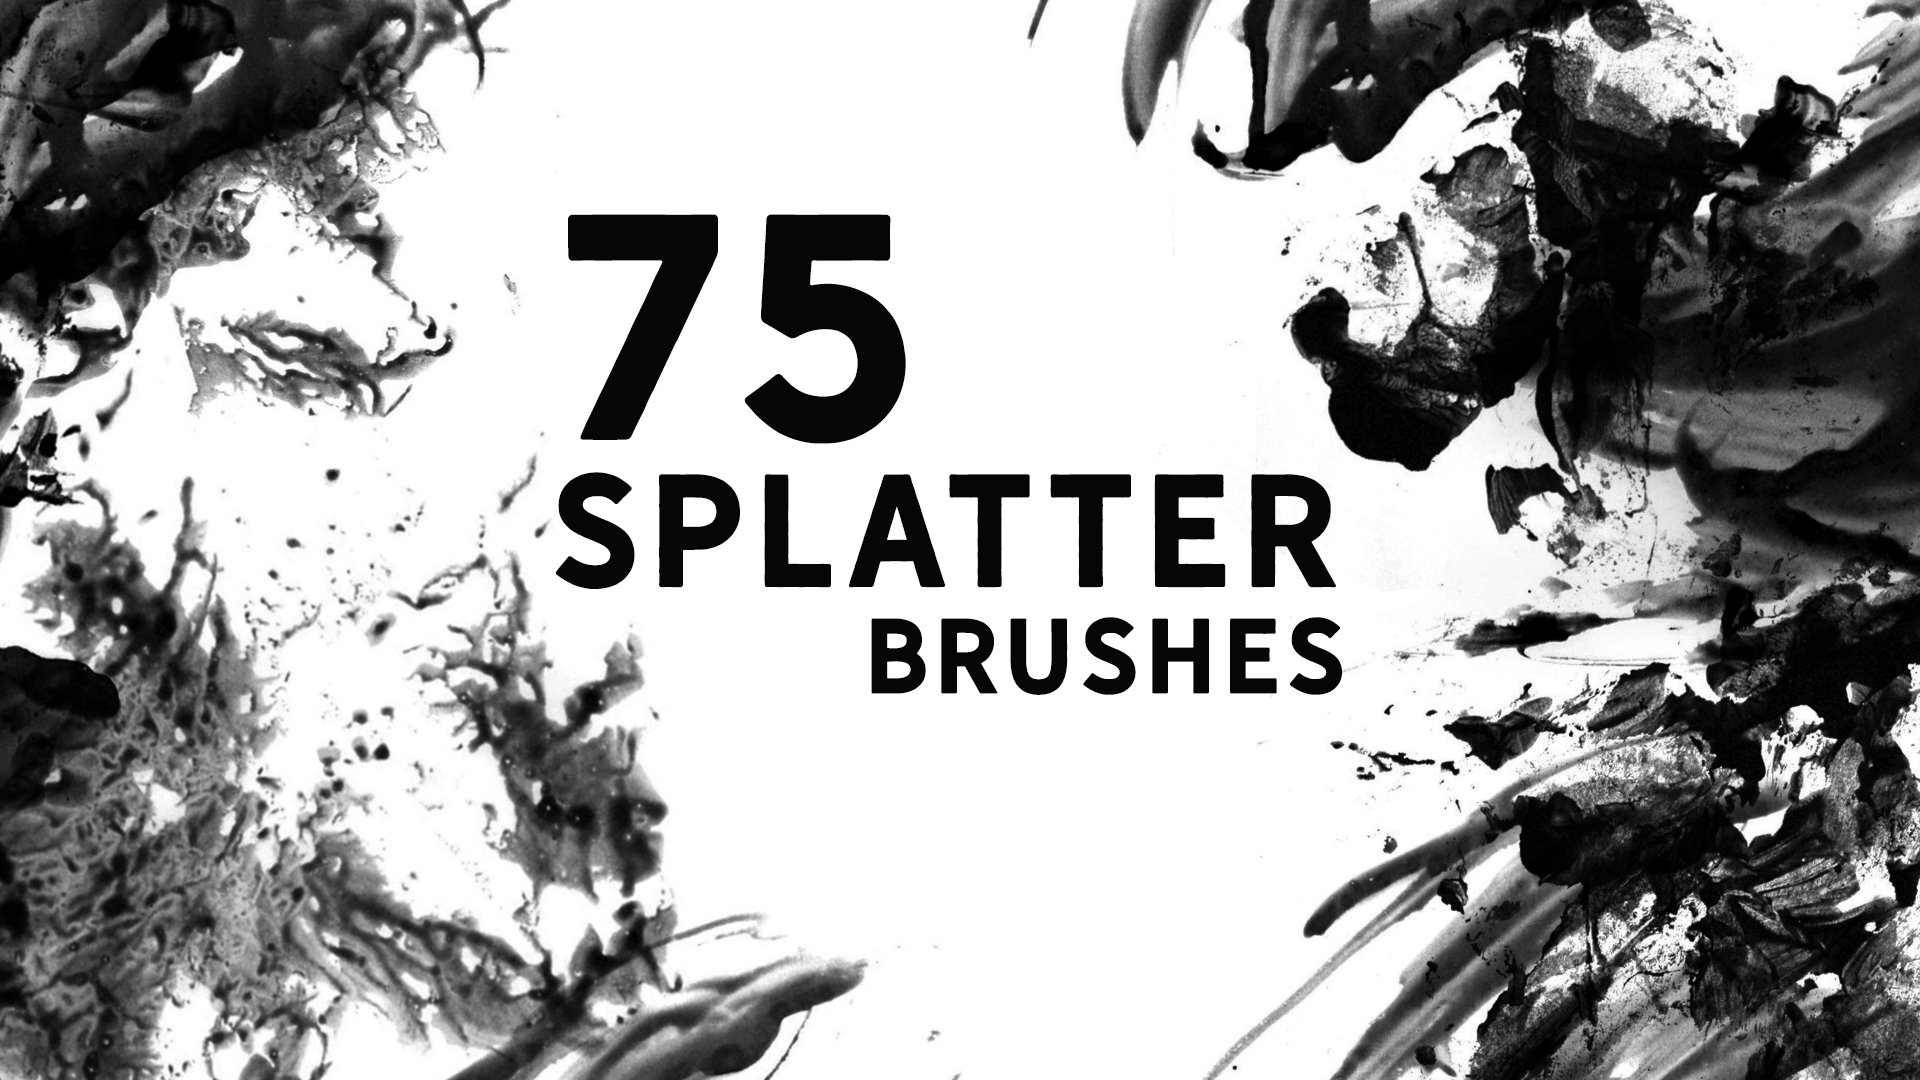 Splatter Photoshop Brushescover image.